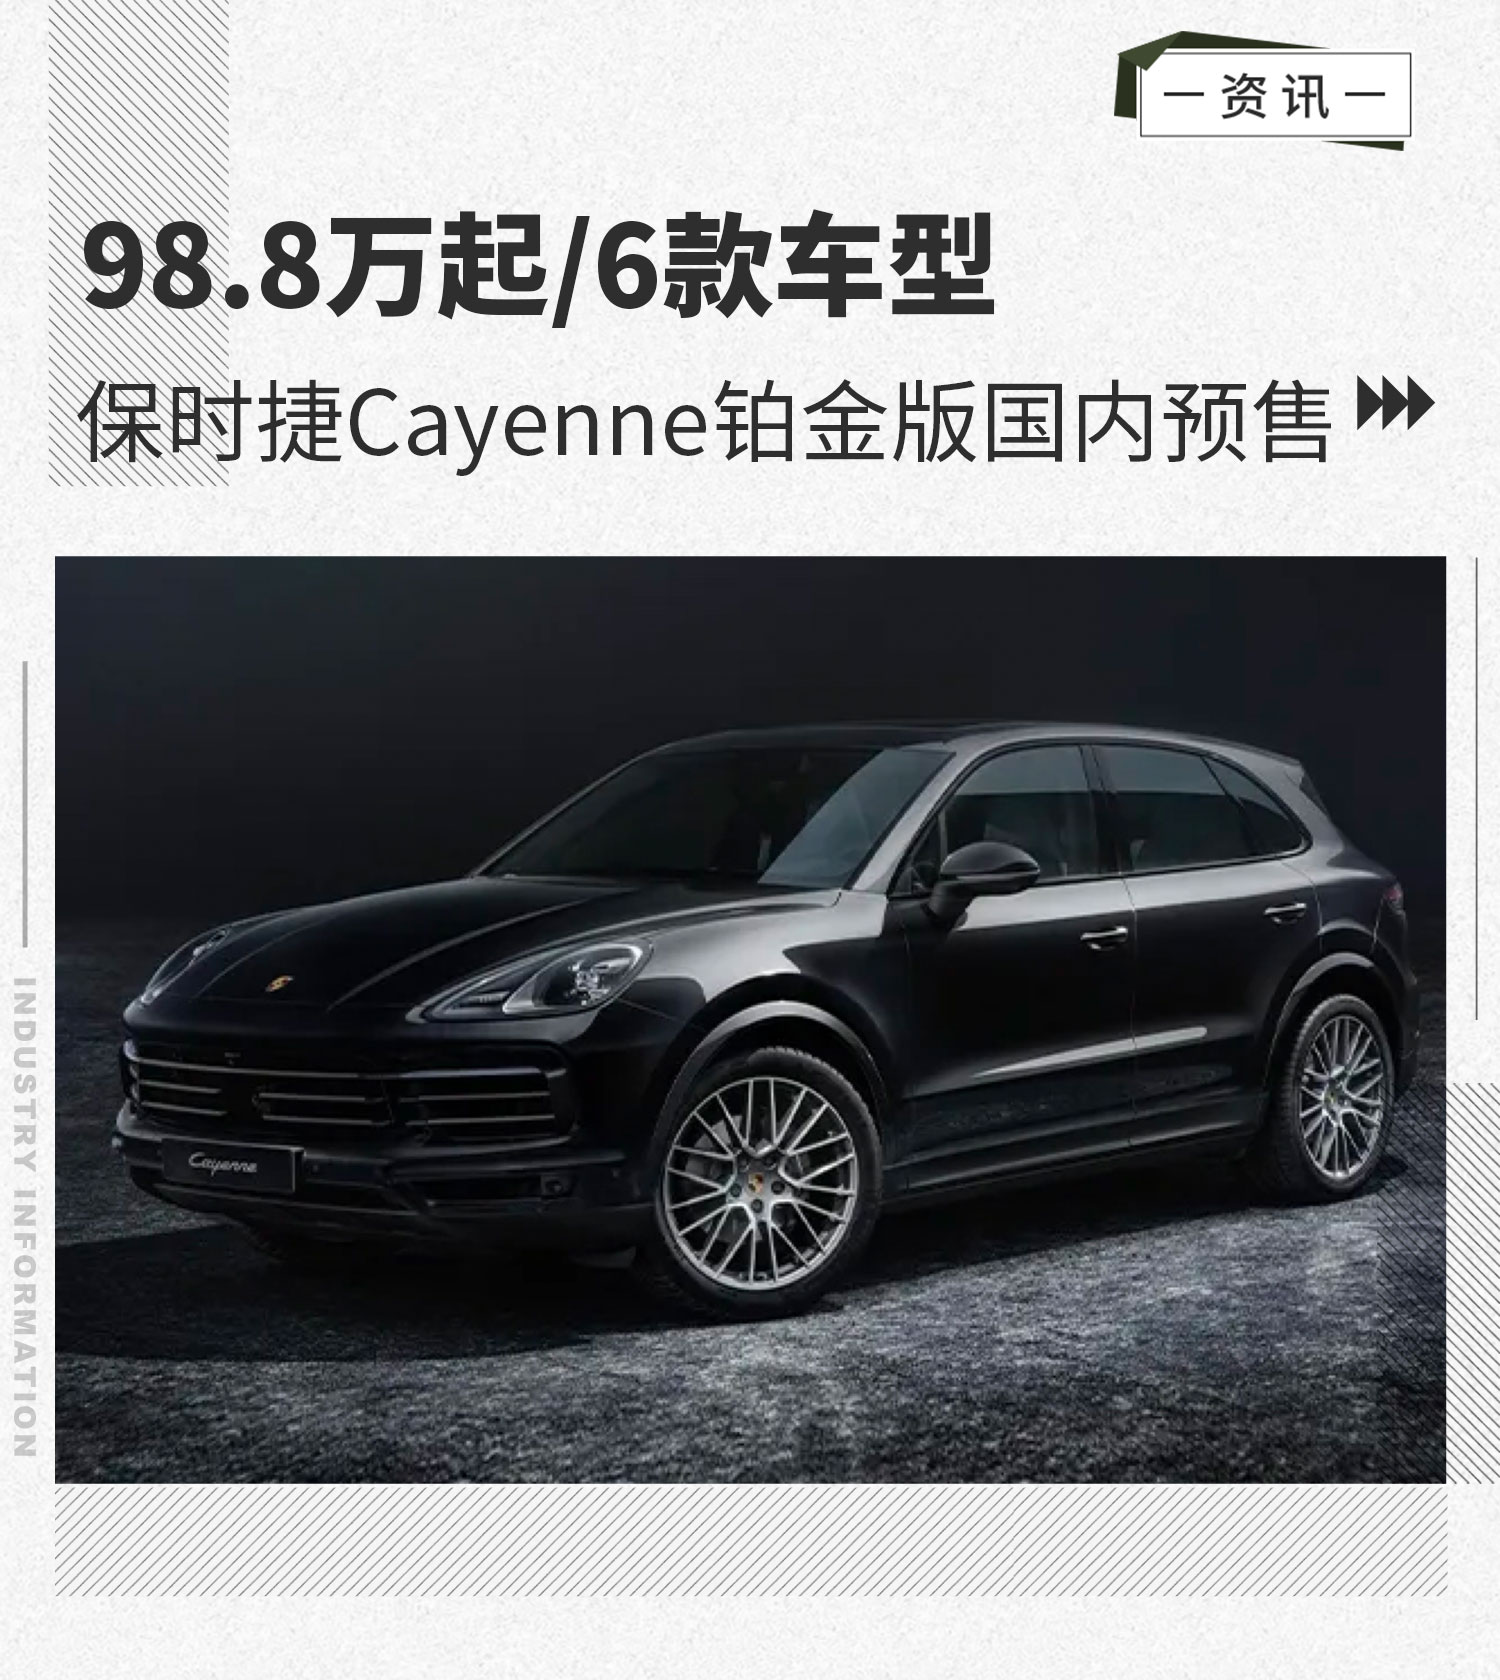 98.8万起/6款车型 保时捷Cayenne铂金版国内预售